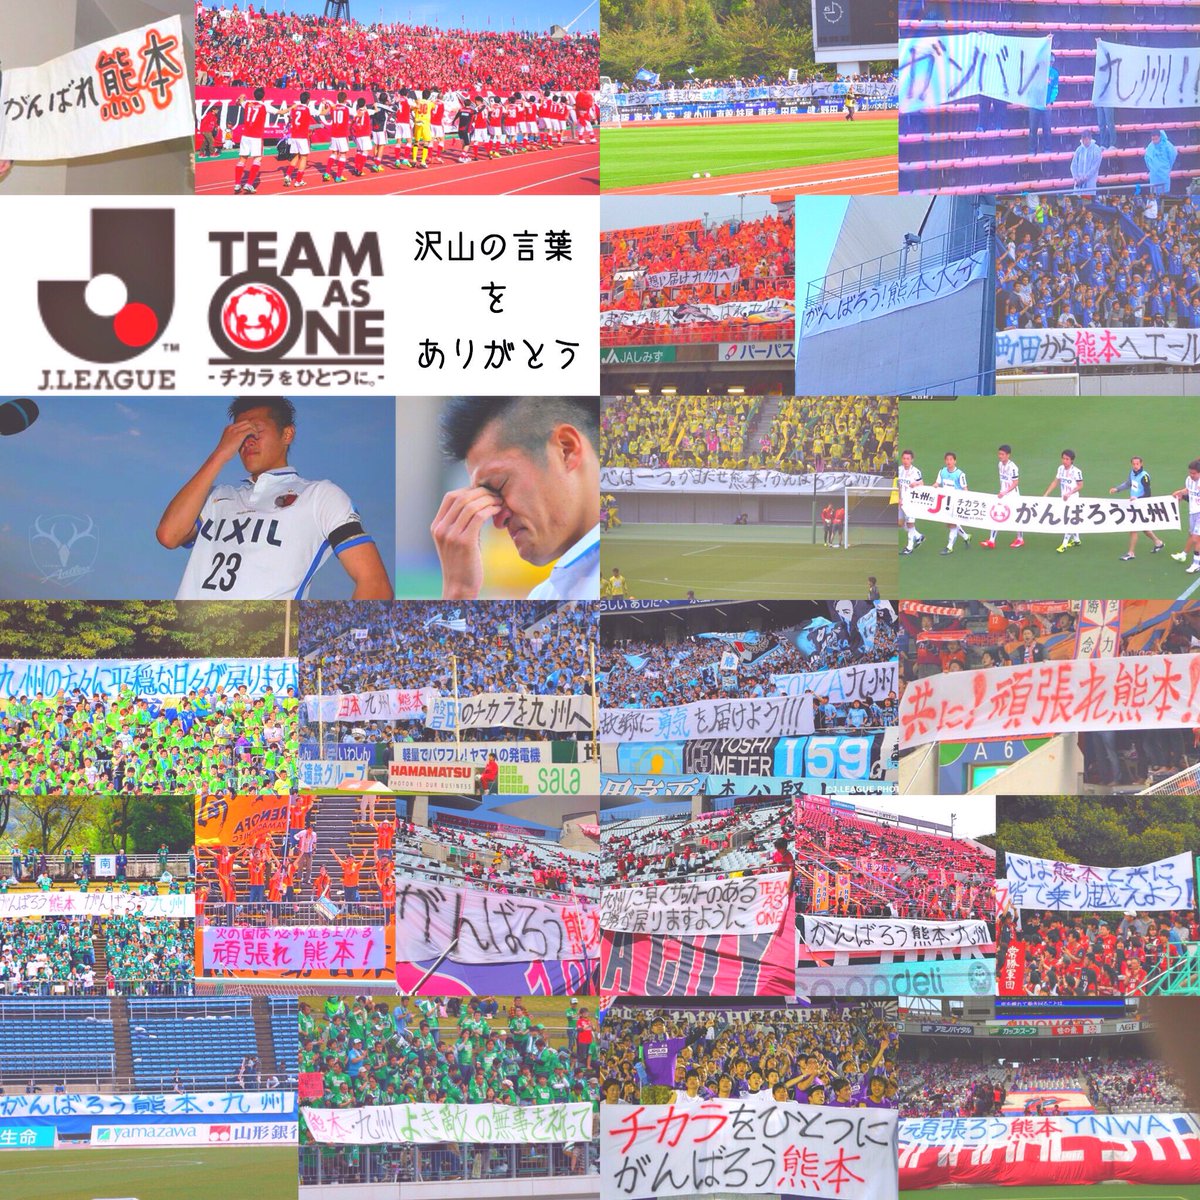 Re 熊本県民として サッカー好きとして Jリーグ好きとして 沢山のチームからの 素敵な横断幕嬉しいです ありがとうございます 早くサッカー観戦 したいな 熊本地震 Jリーグ チカラをひとつに 感謝 T Co 6uztudqu3f Twitter